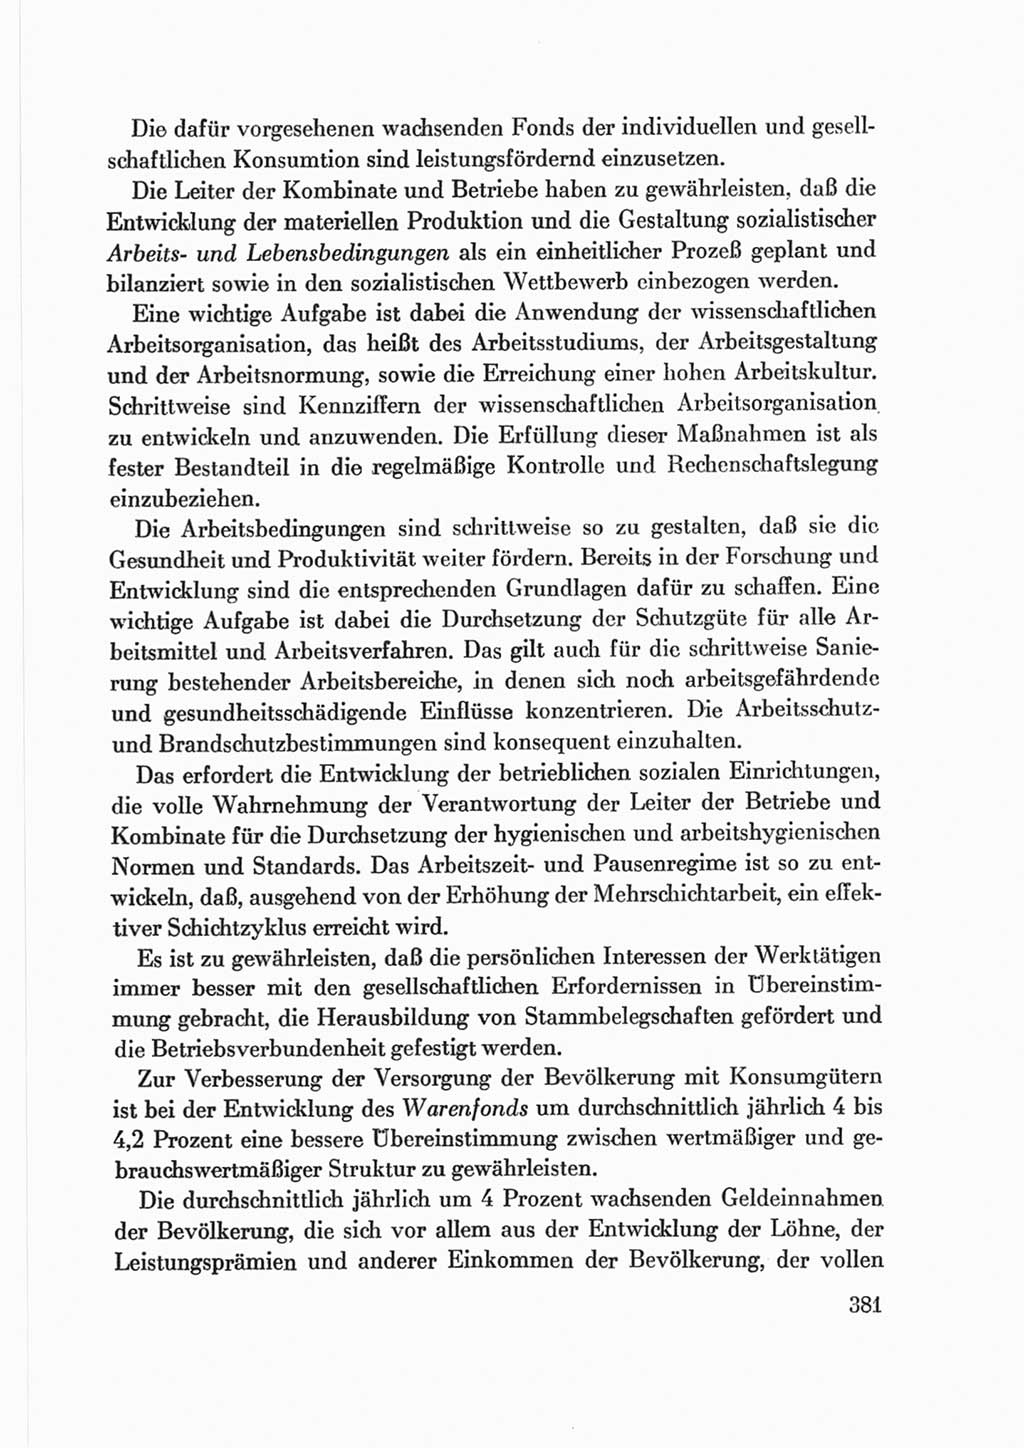 Protokoll der Verhandlungen des Ⅷ. Parteitages der Sozialistischen Einheitspartei Deutschlands (SED) [Deutsche Demokratische Republik (DDR)] 1971, Band 2, Seite 381 (Prot. Verh. Ⅷ. PT SED DDR 1971, Bd. 2, S. 381)